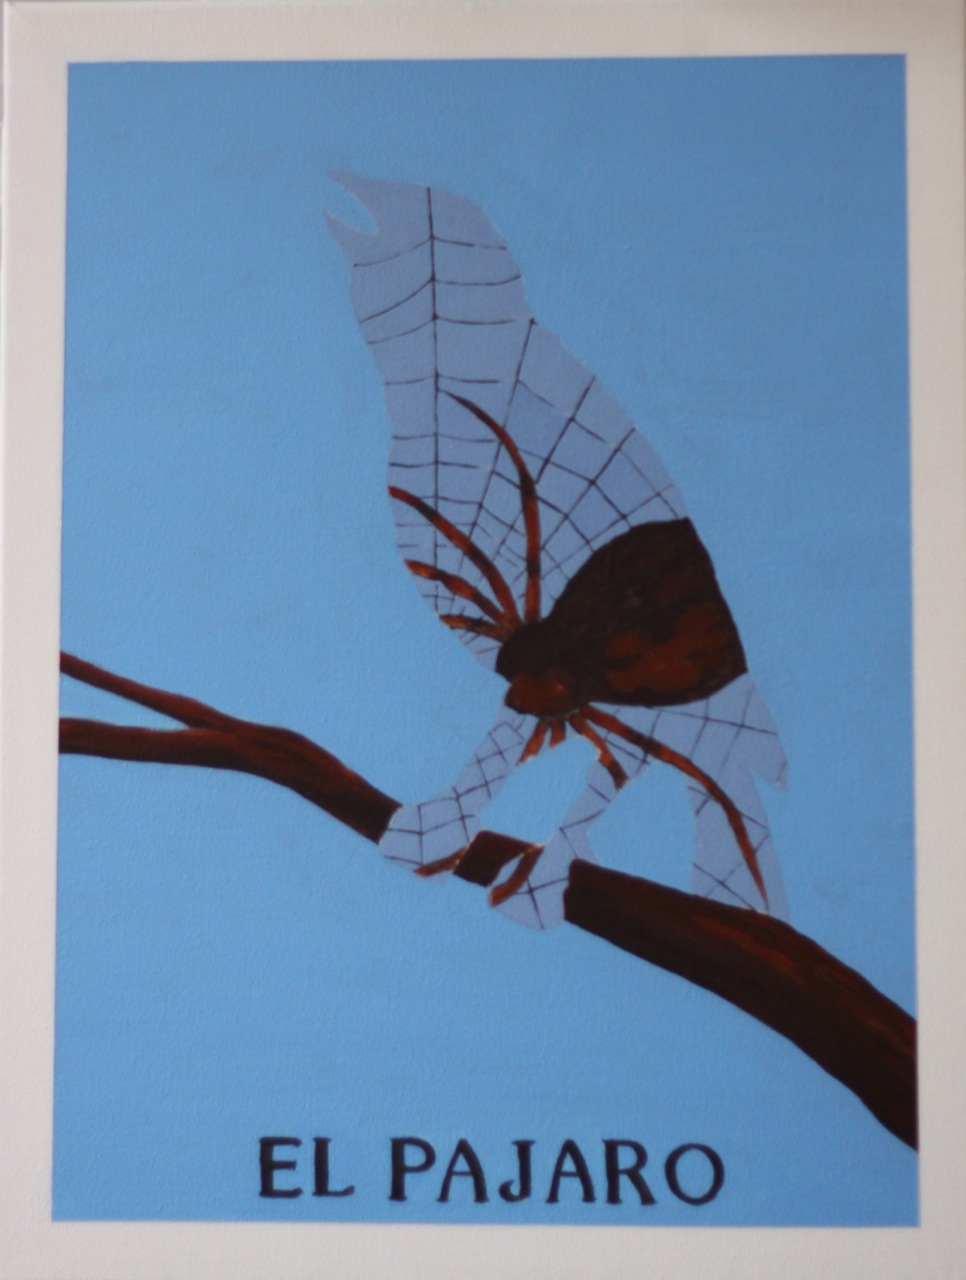 El Pajaro, Acrylic on canvas, 24" x 18"